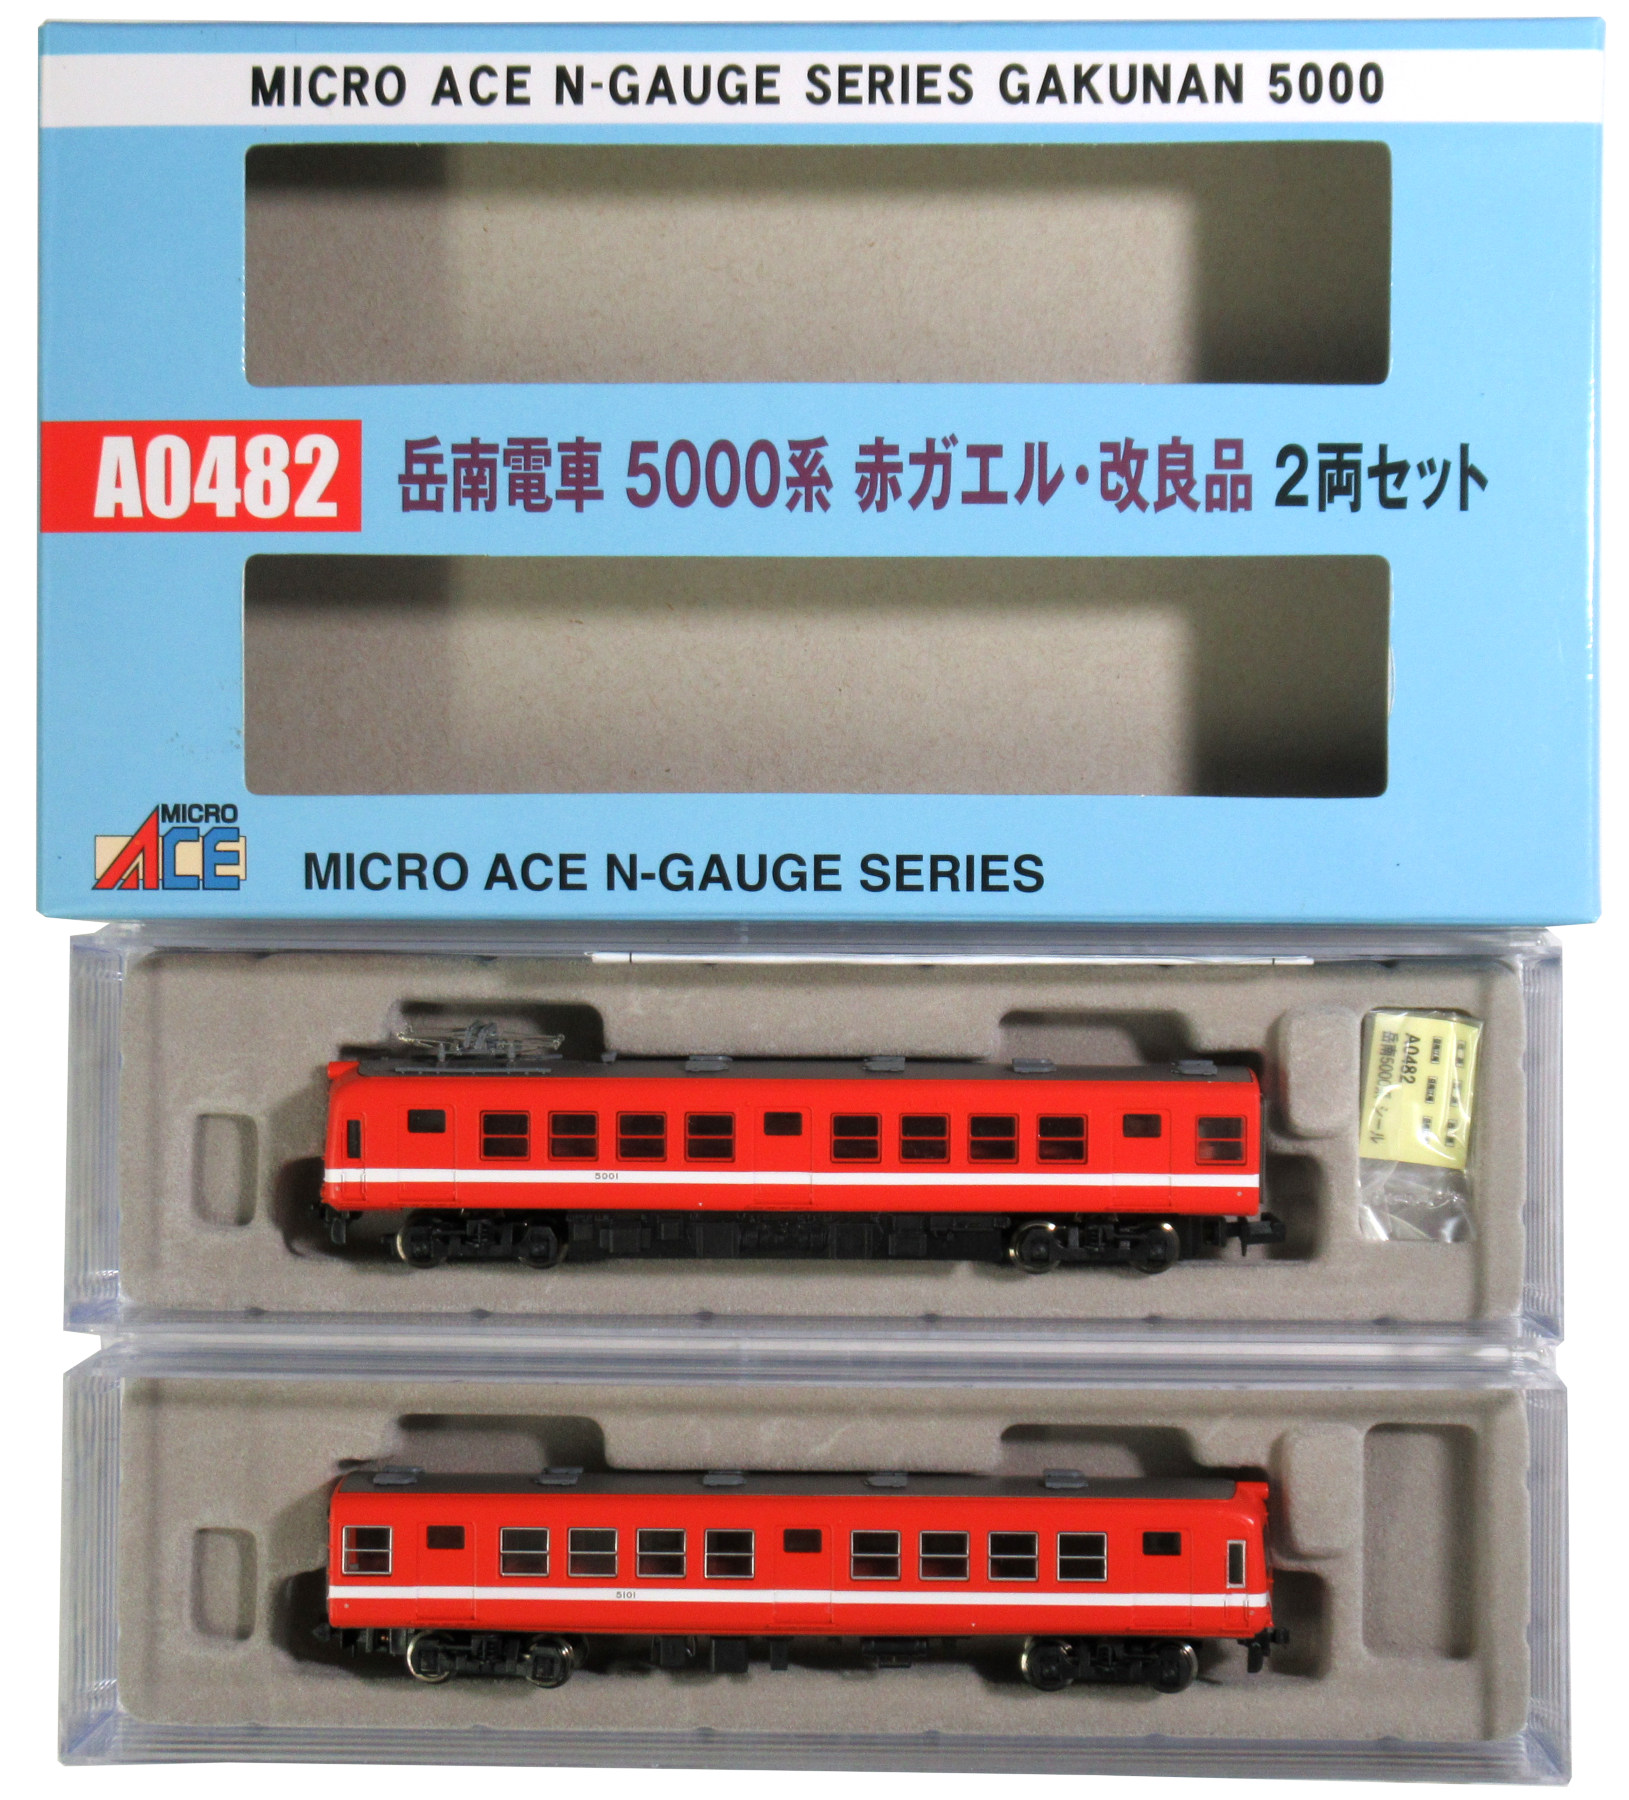 公式]鉄道模型(A0482岳南鉄道 5000系 赤ガエル改良品 2両セット)商品 